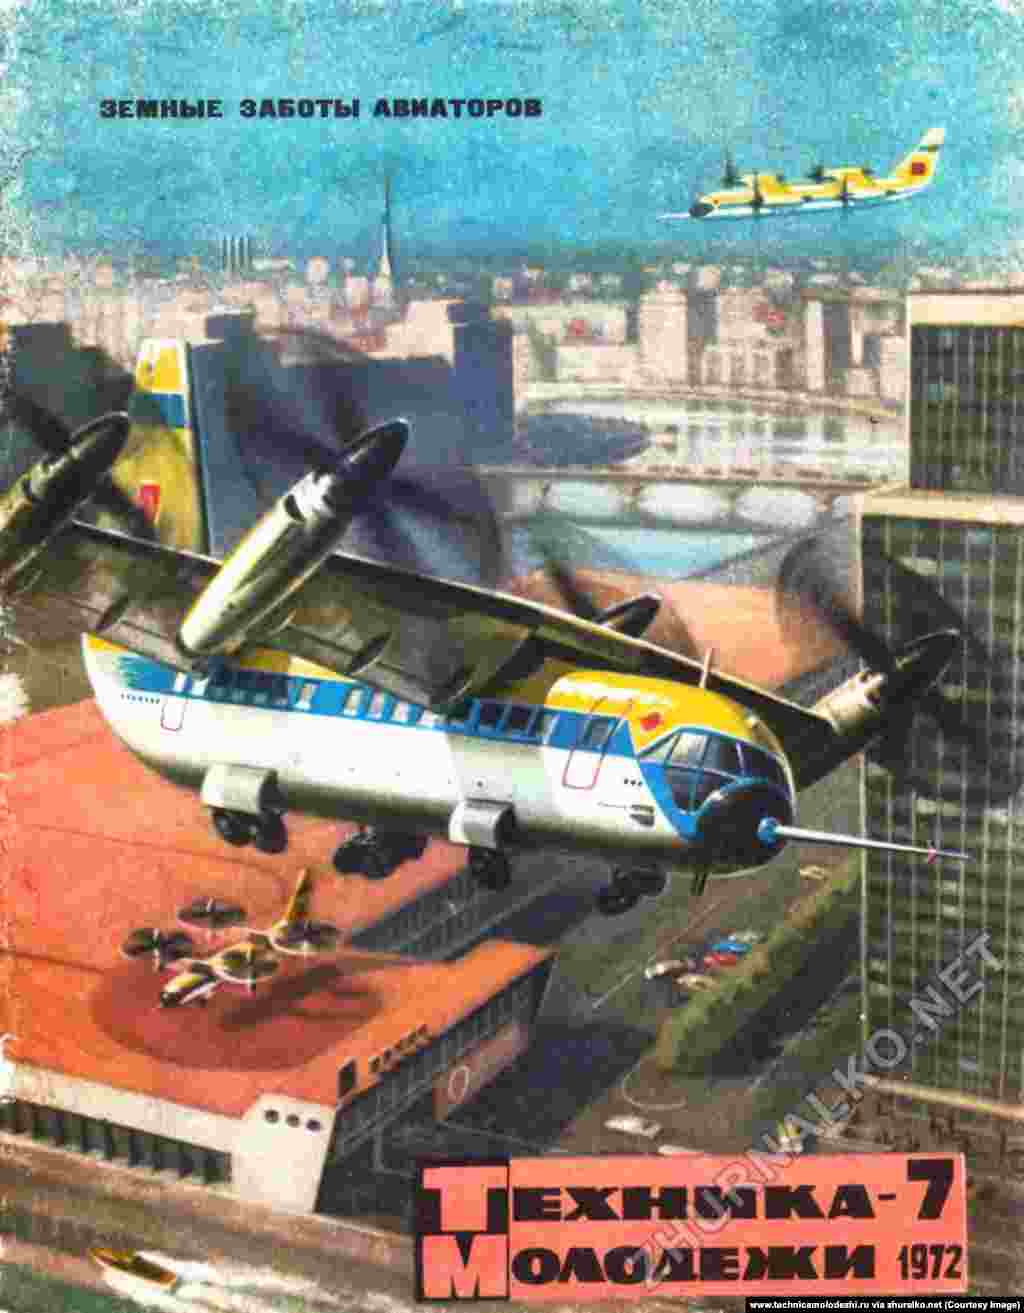 Самолет с вертикальным взлетом и посадкой, нарисованный за 17 лет до первого полета похожего на это изображение воздушного судна Bell Boeing Osprey в США.